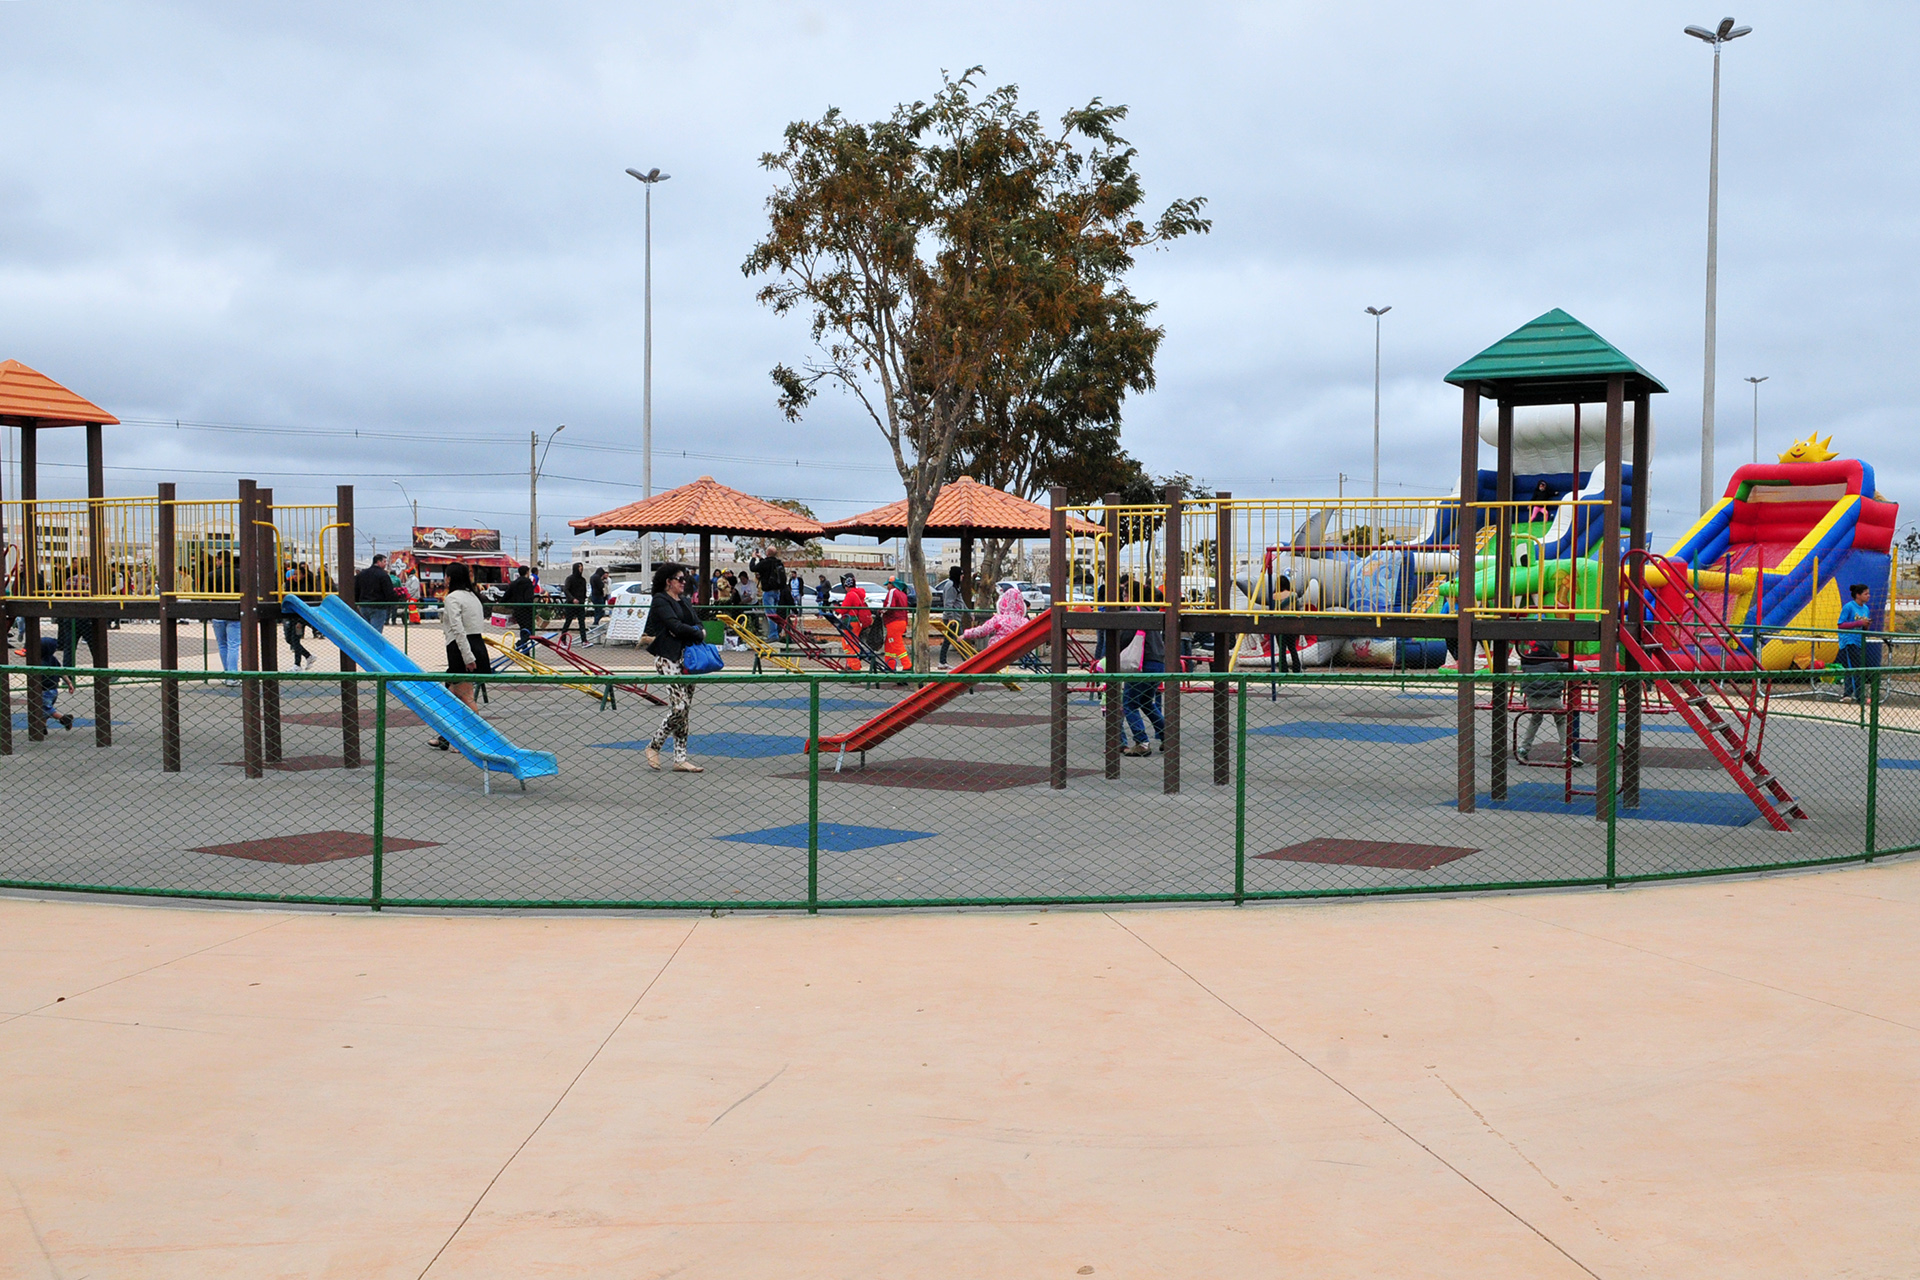 O novo Parque Vivencial e Urbano do Jardim Botânico conta com 24 praças, 12 parques infantis, 6 pontos de encontro comunitários, 2 quadras de esporte e 1 playground